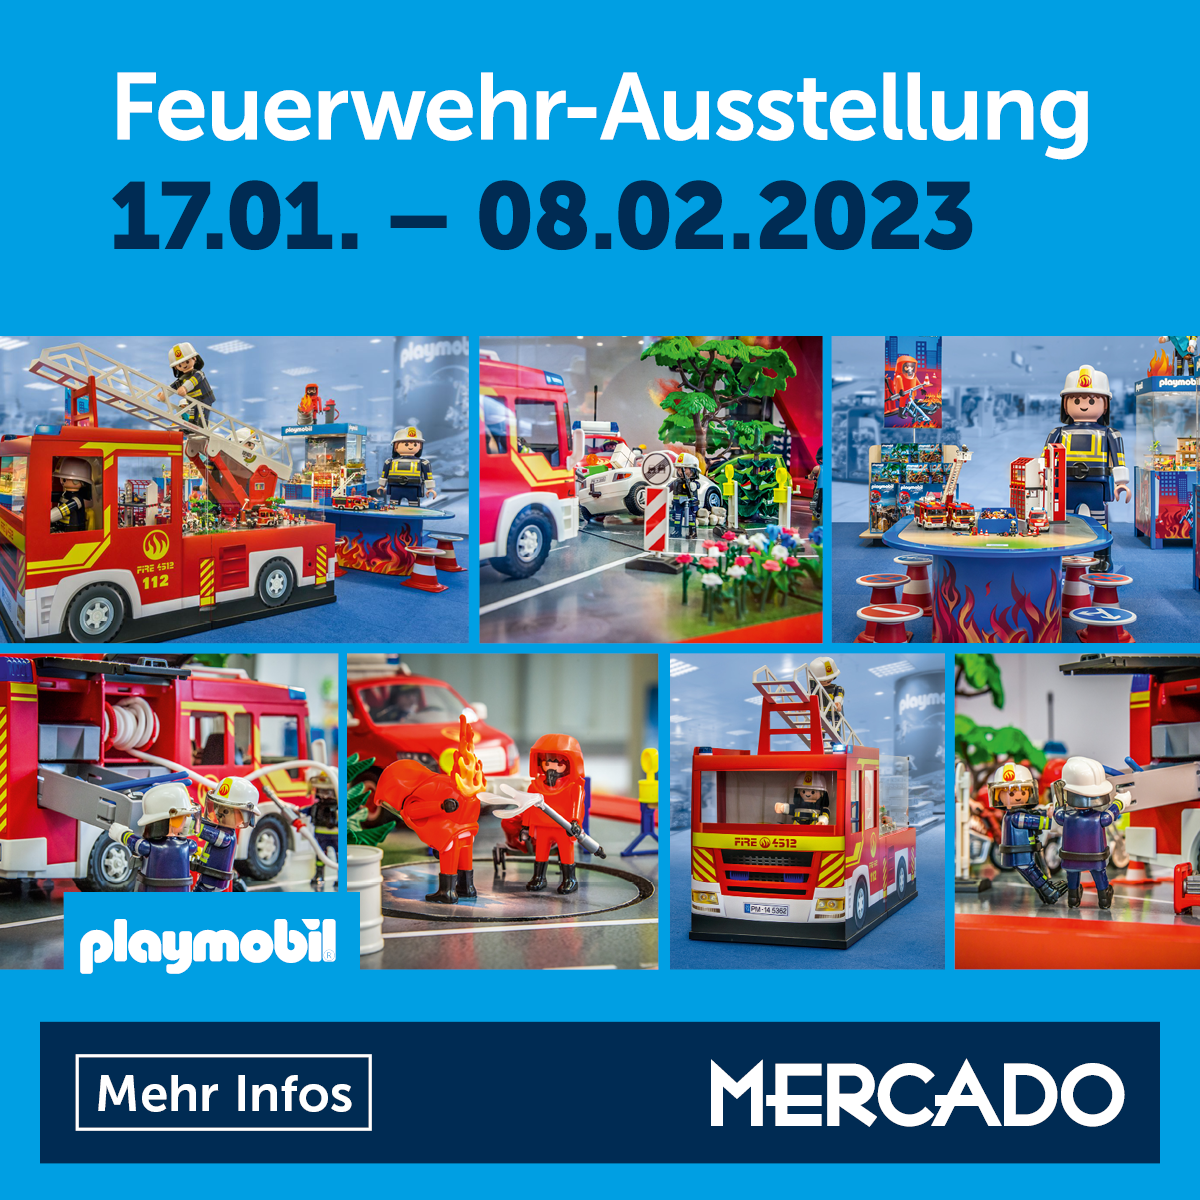 Mercado, Playmobil Feuerwehr-Ausstellung